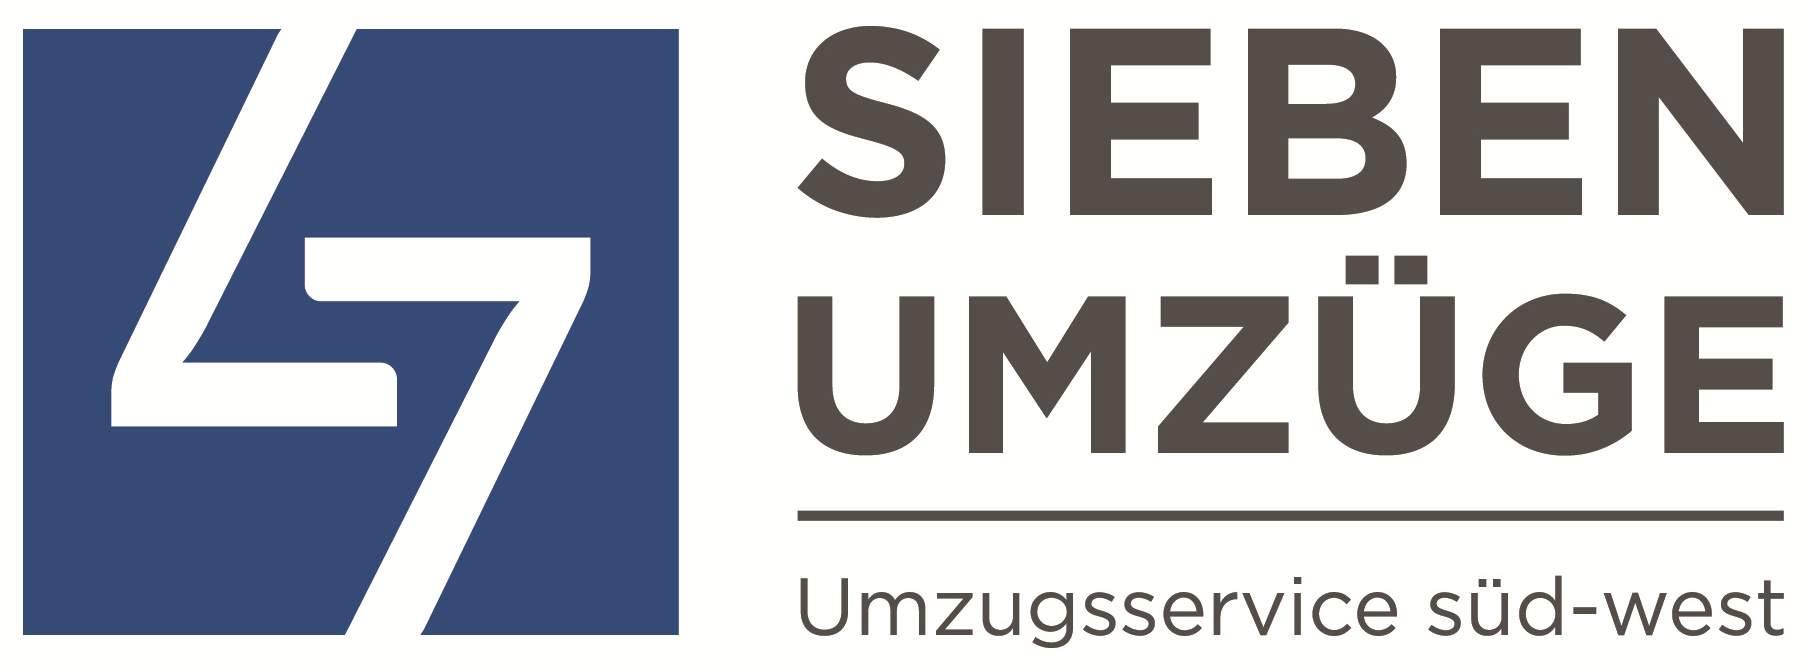 SIEBEN Umzüge GmbH